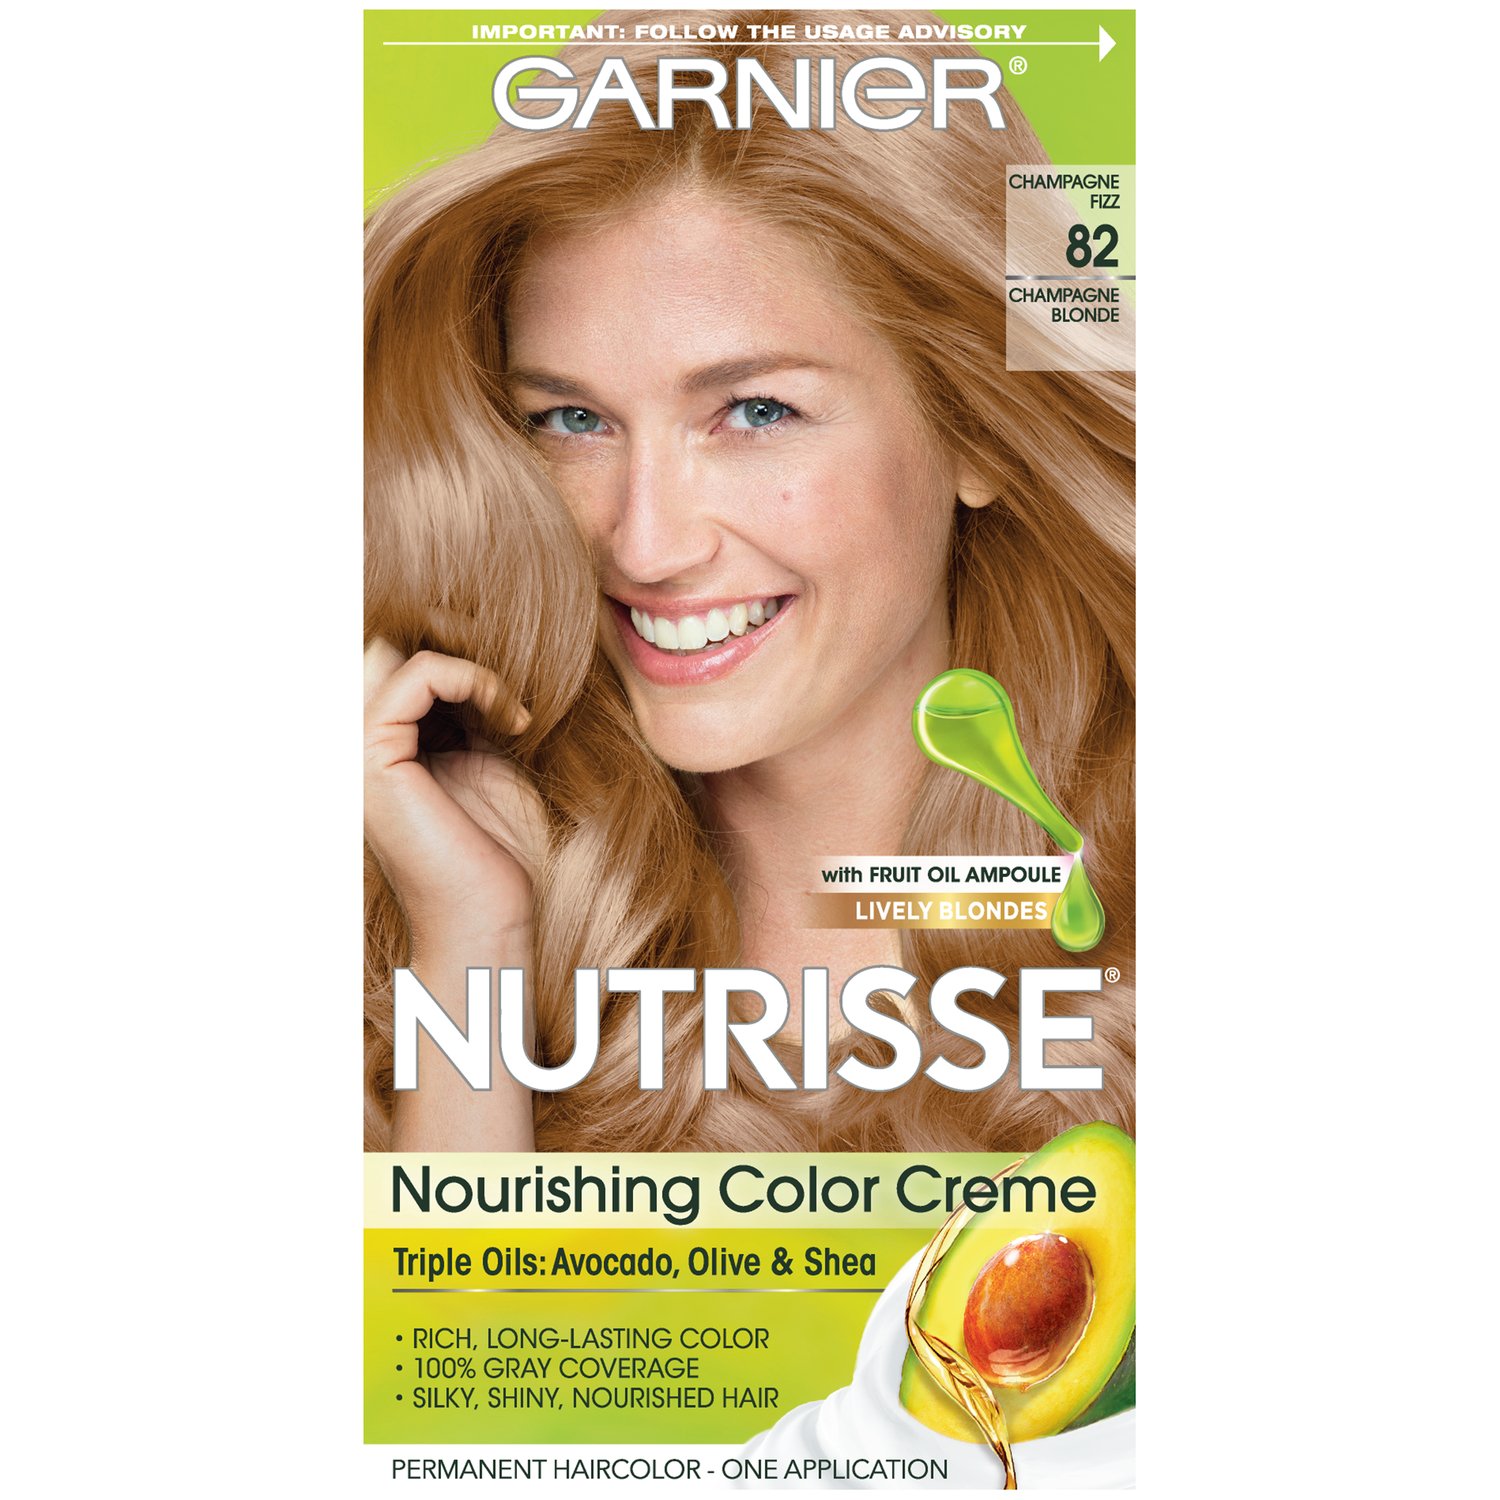 Garnier Nutrisse Nourishing Color Creme in Champagne Blonde